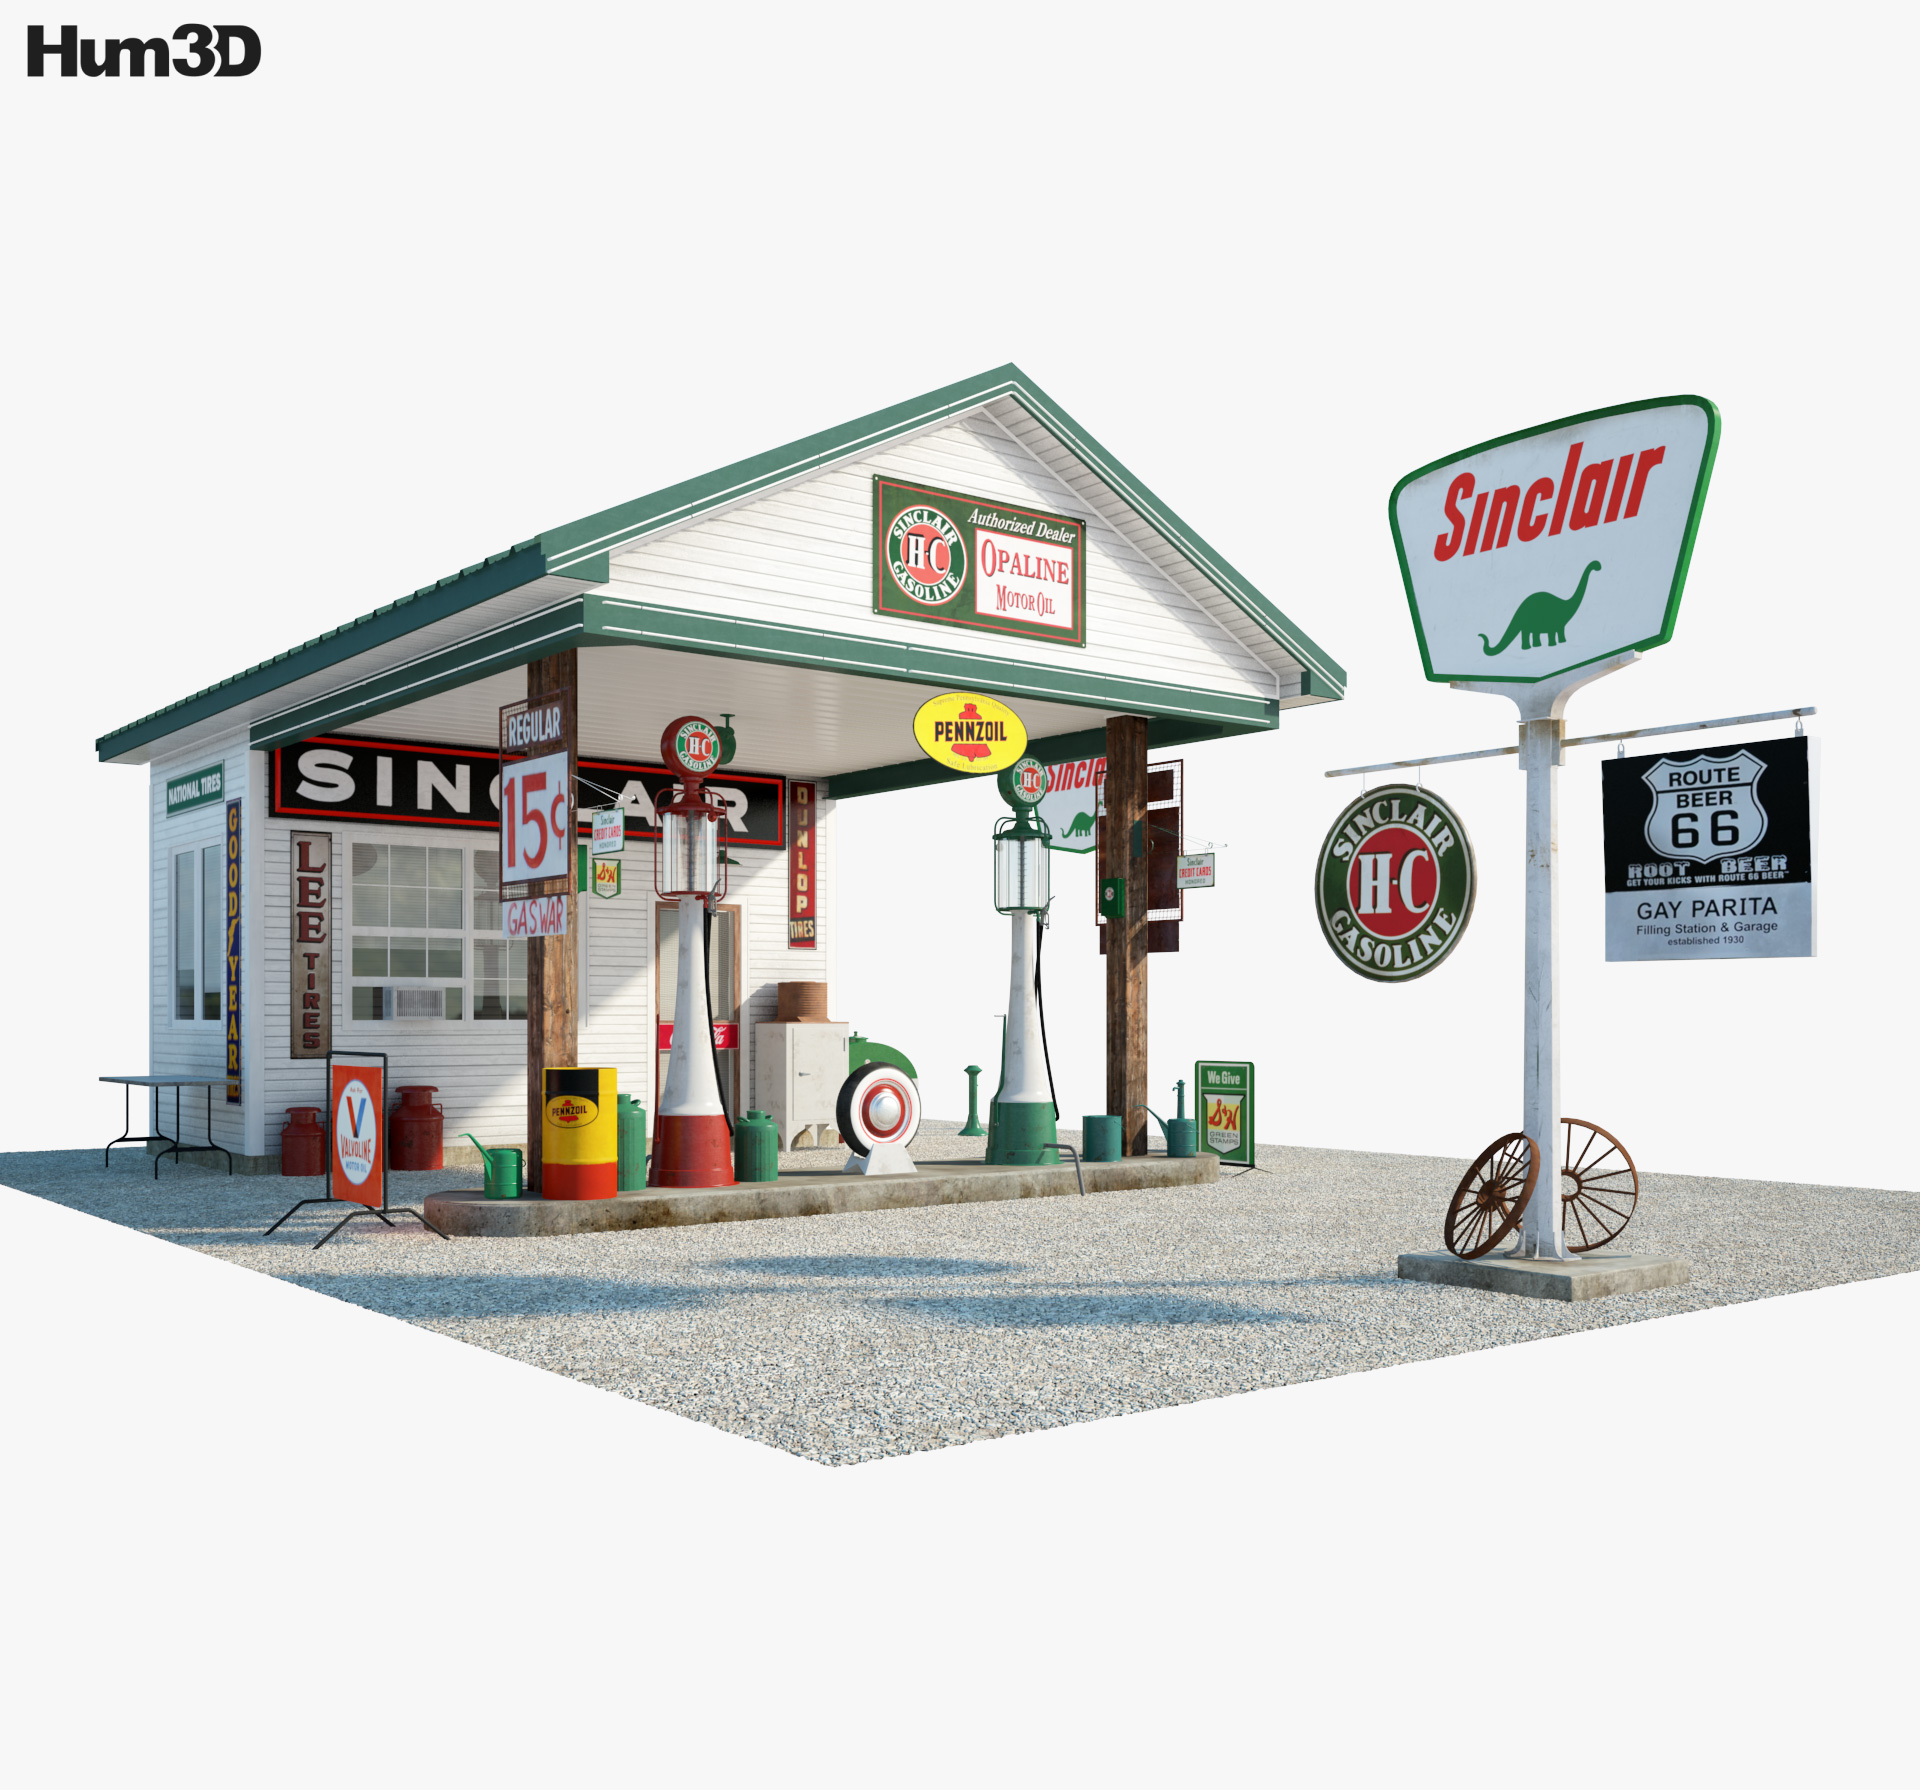 Sinclair gas station 3d model